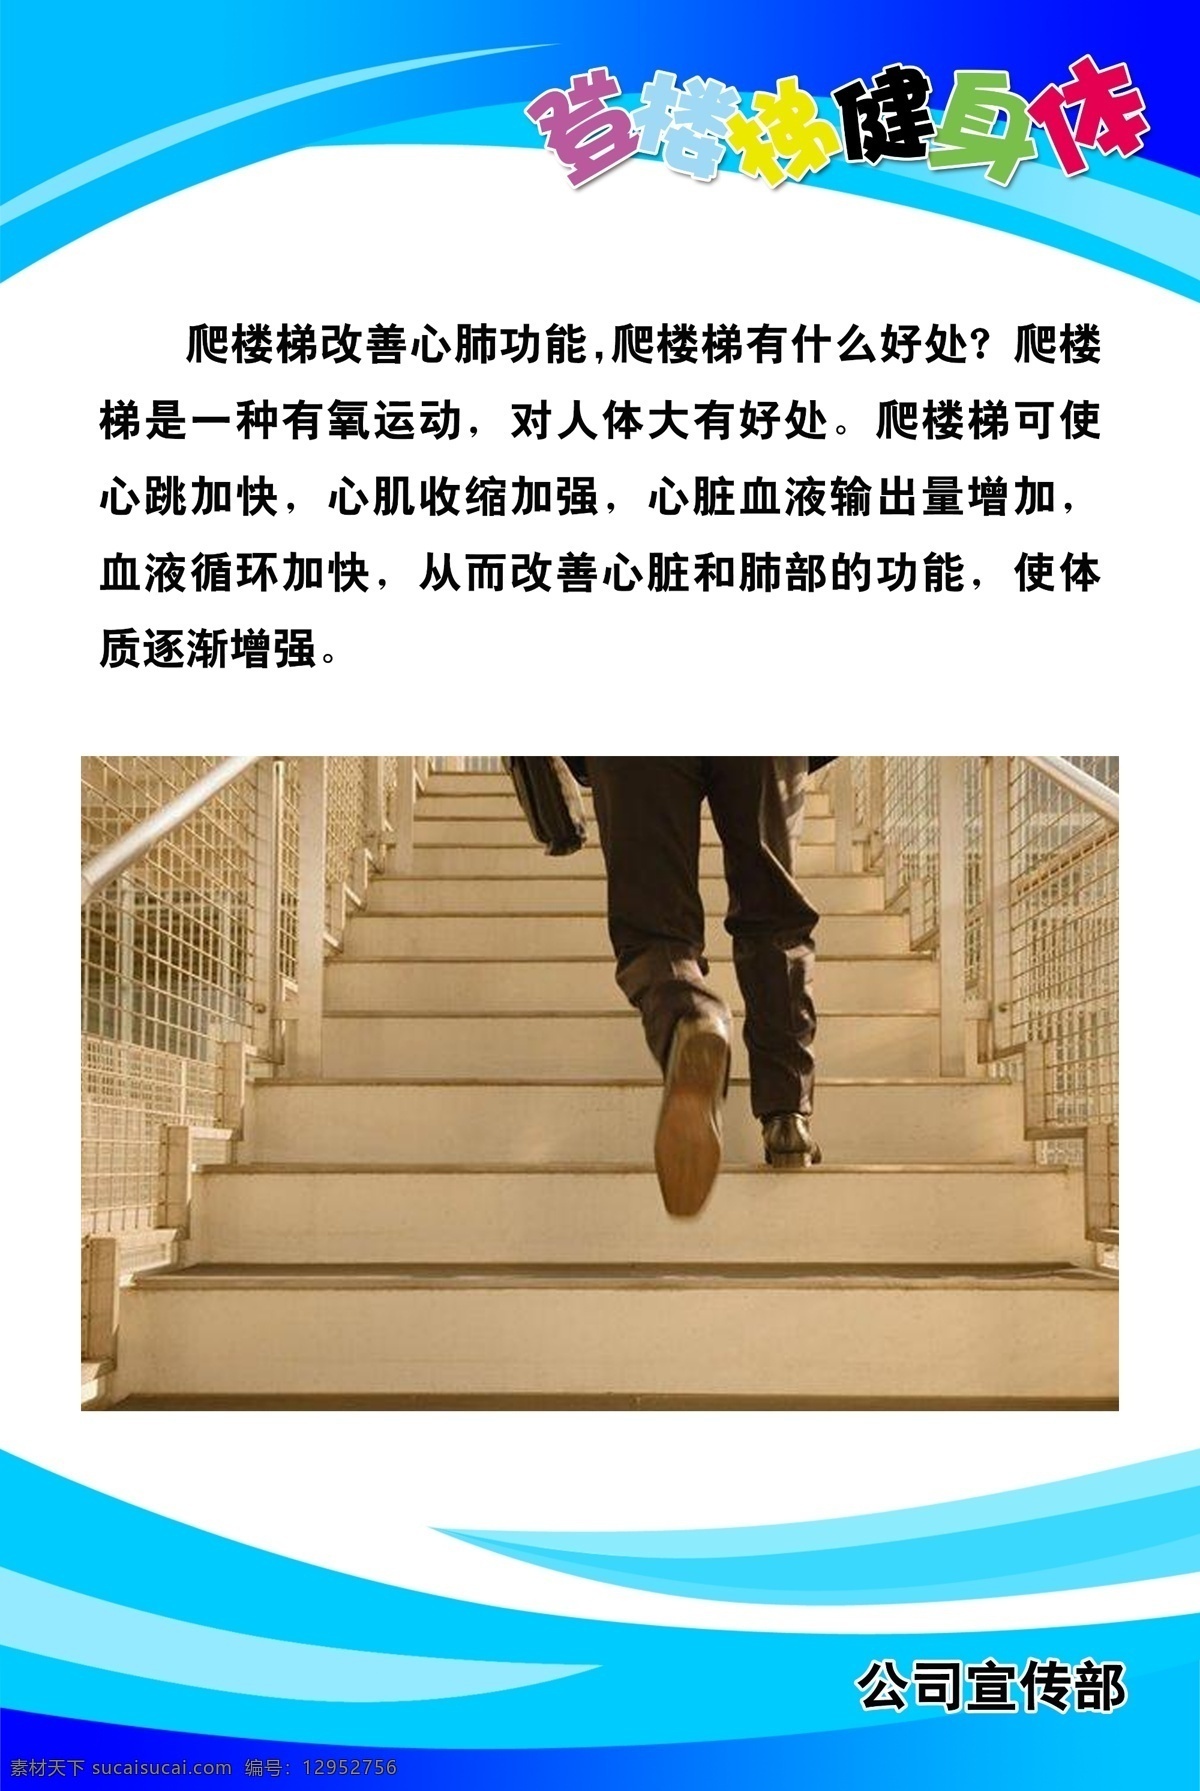 爬楼梯的好处 爬楼梯 运动 提示 公益宣传 锻炼身体 鼓励爬楼 爬楼健康 颜荨